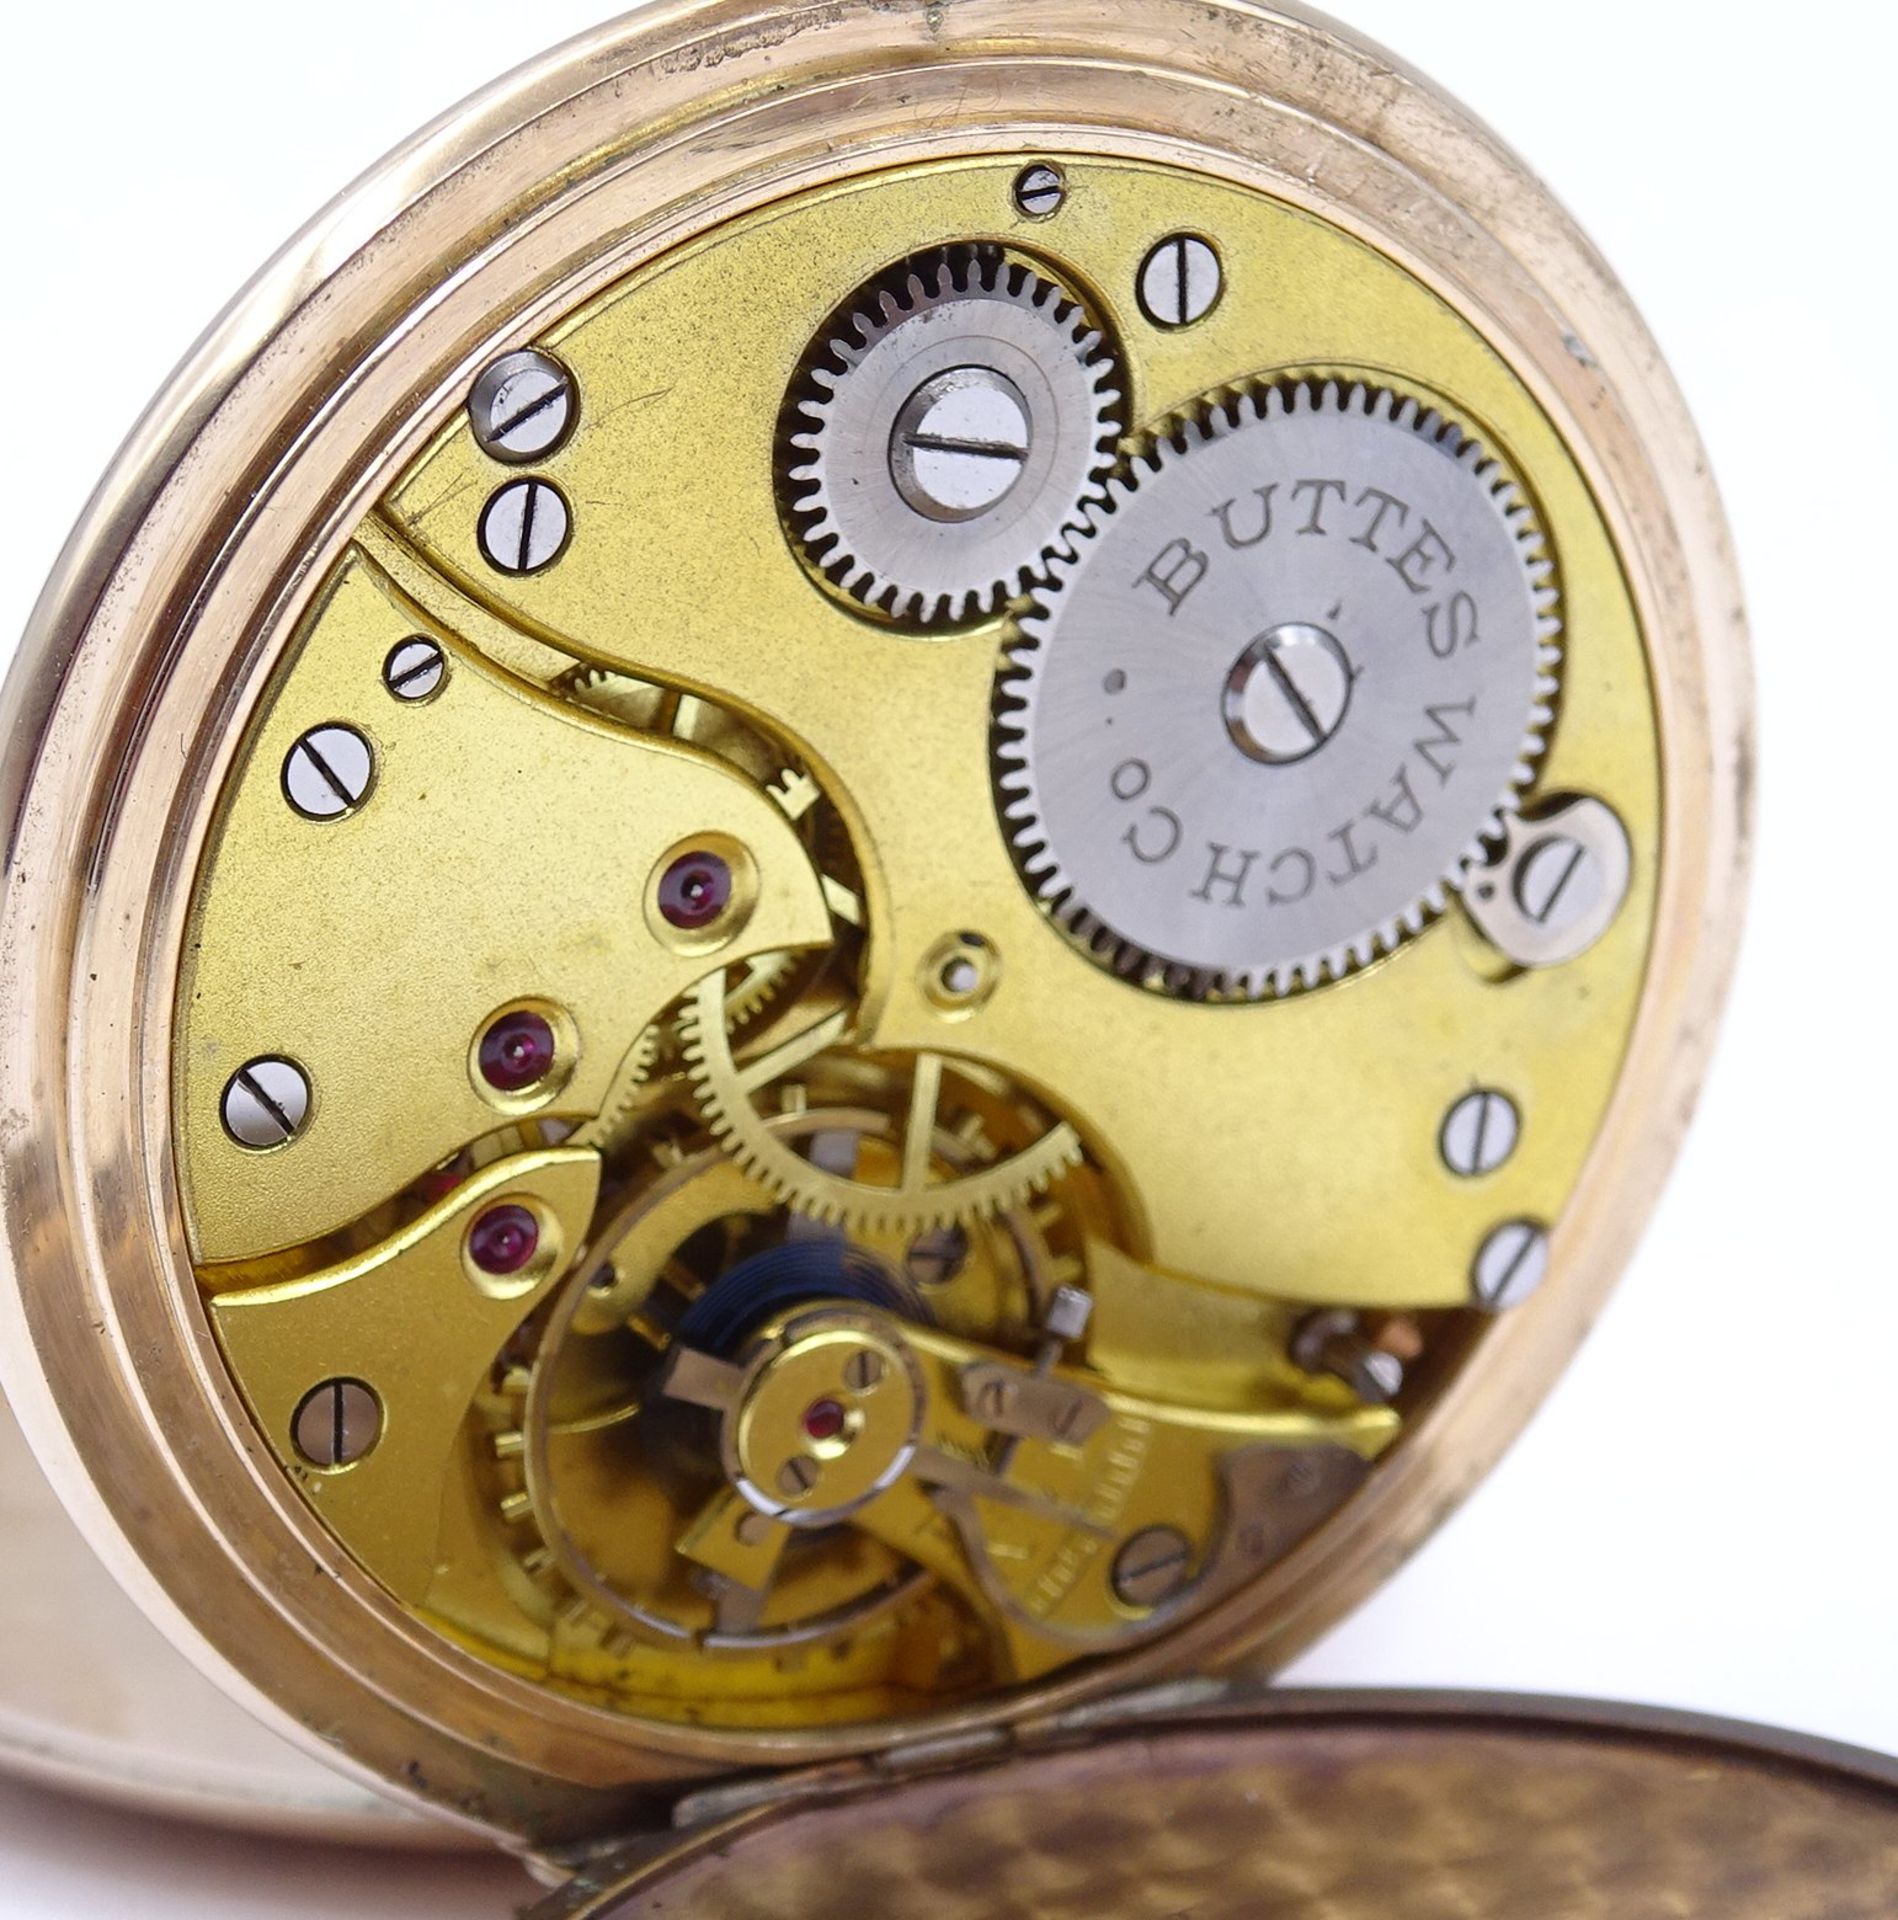 Herren Taschenuhr B.W.C. Chronometre, mechanisch, Krone fehlt, Funktion nicht überprüft, D. 49mm, B - Bild 4 aus 6